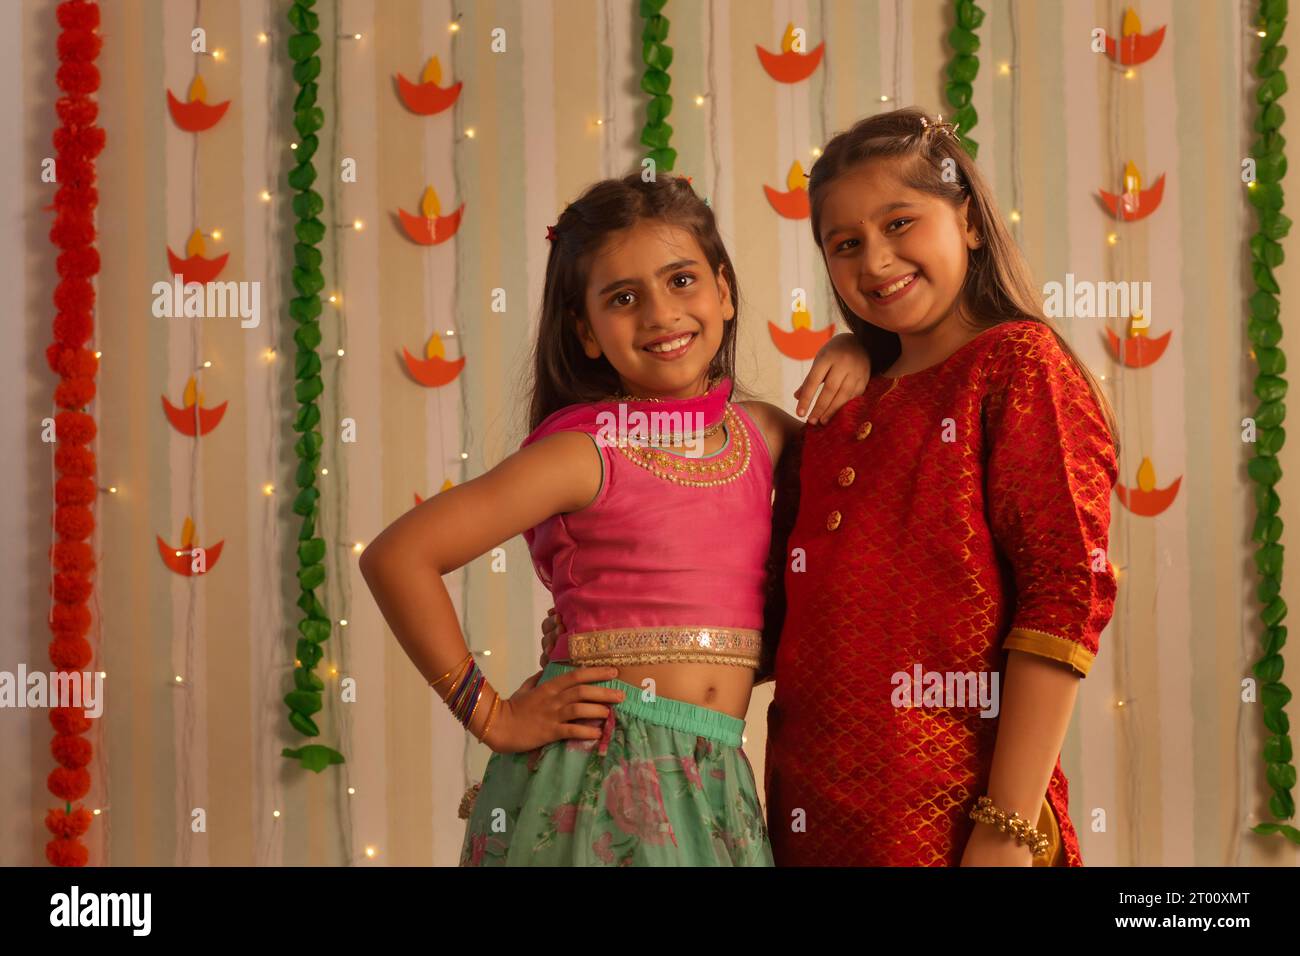 Ritratto di ragazze sorridenti in macchina fotografica in occasione di Diwali Foto Stock